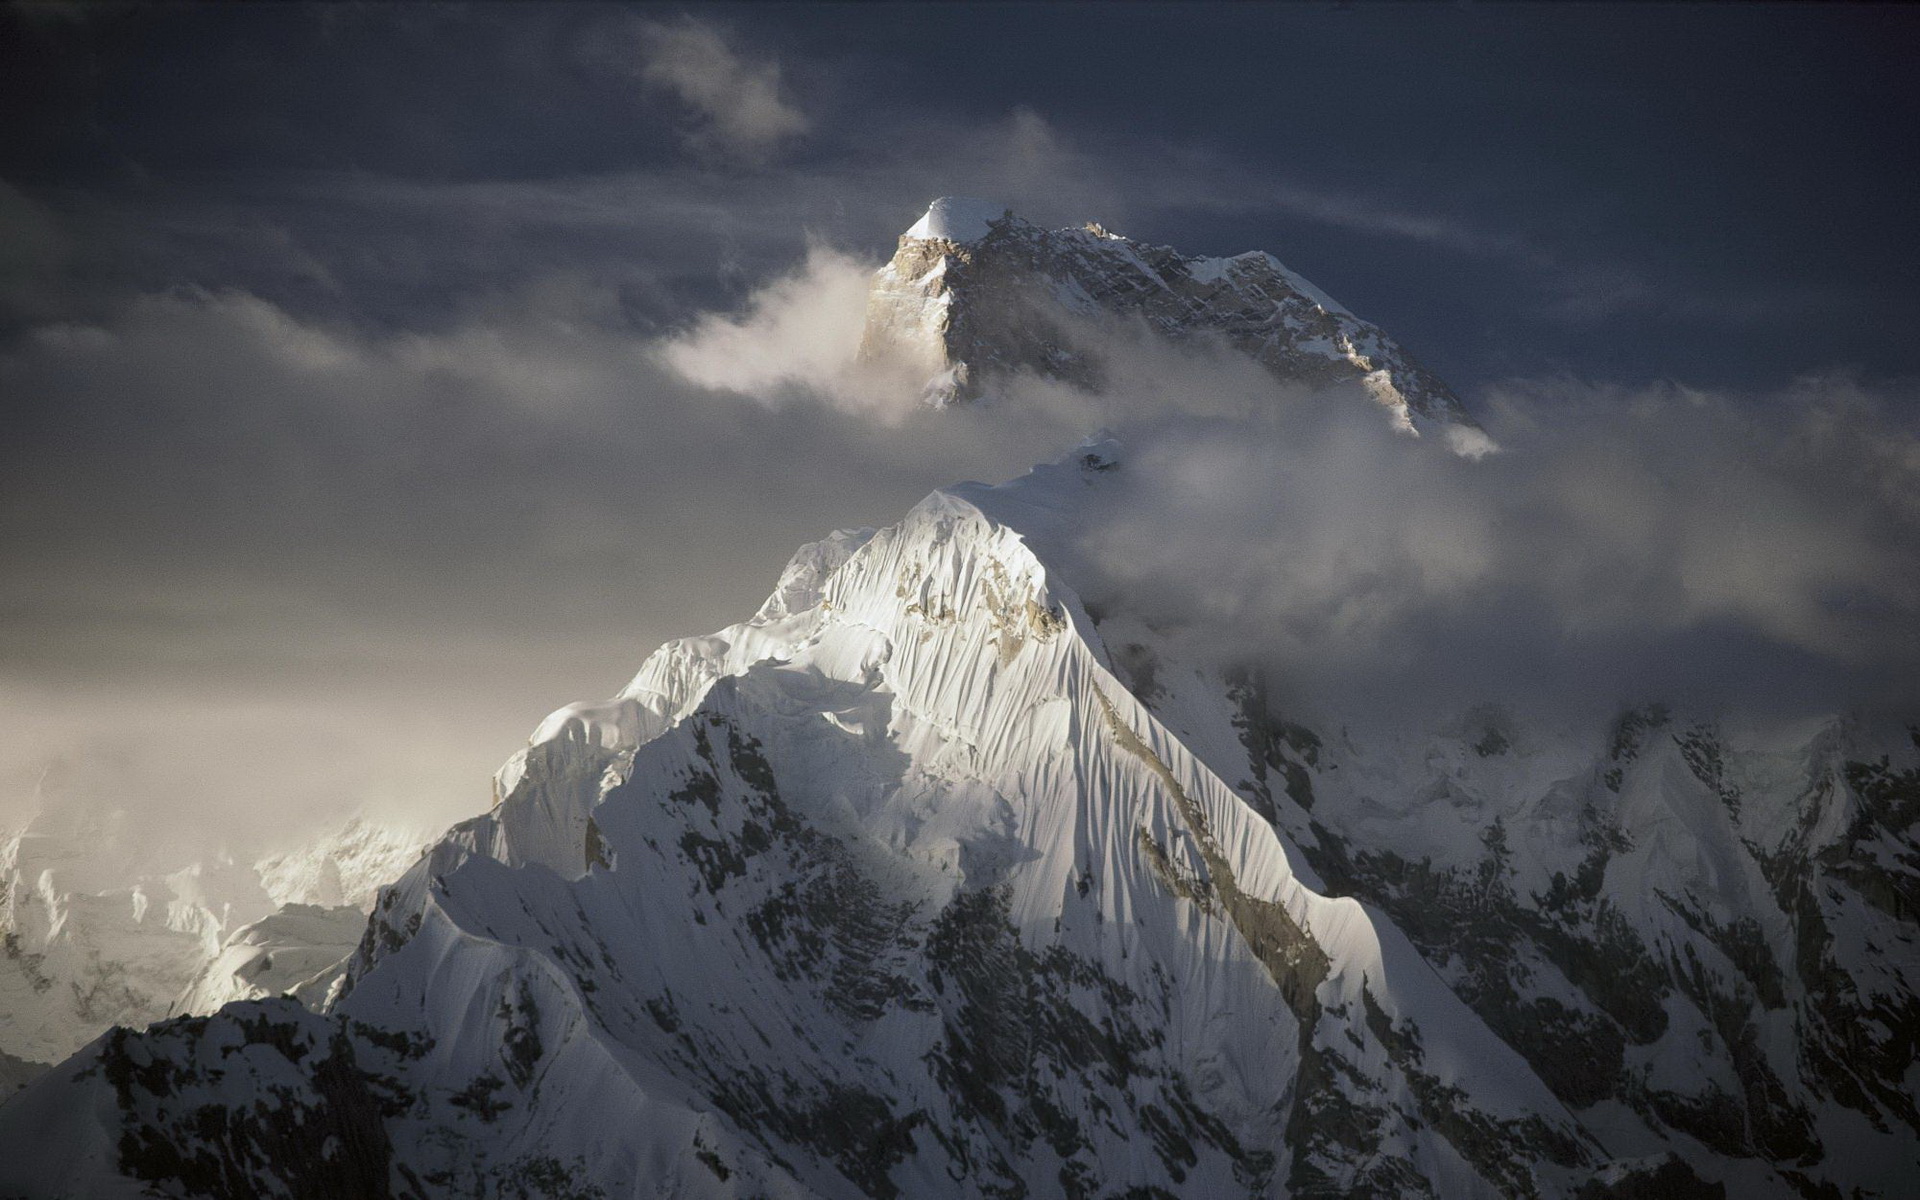 Вышина горы Эверест